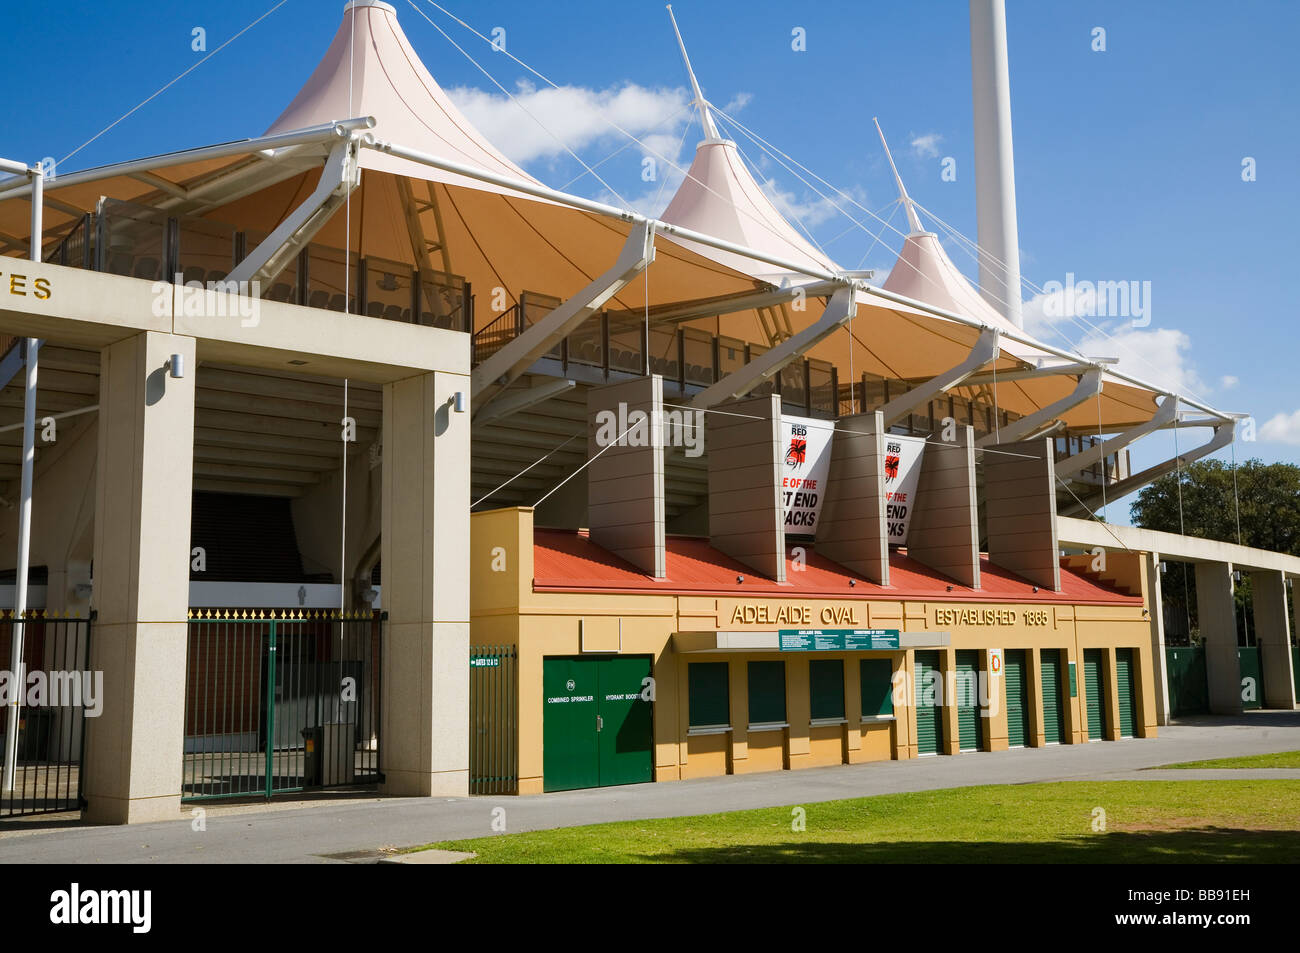 The Adelaide Oval cricket ground.  Adelaide, South Australia, AUSTRALIA Stock Photo